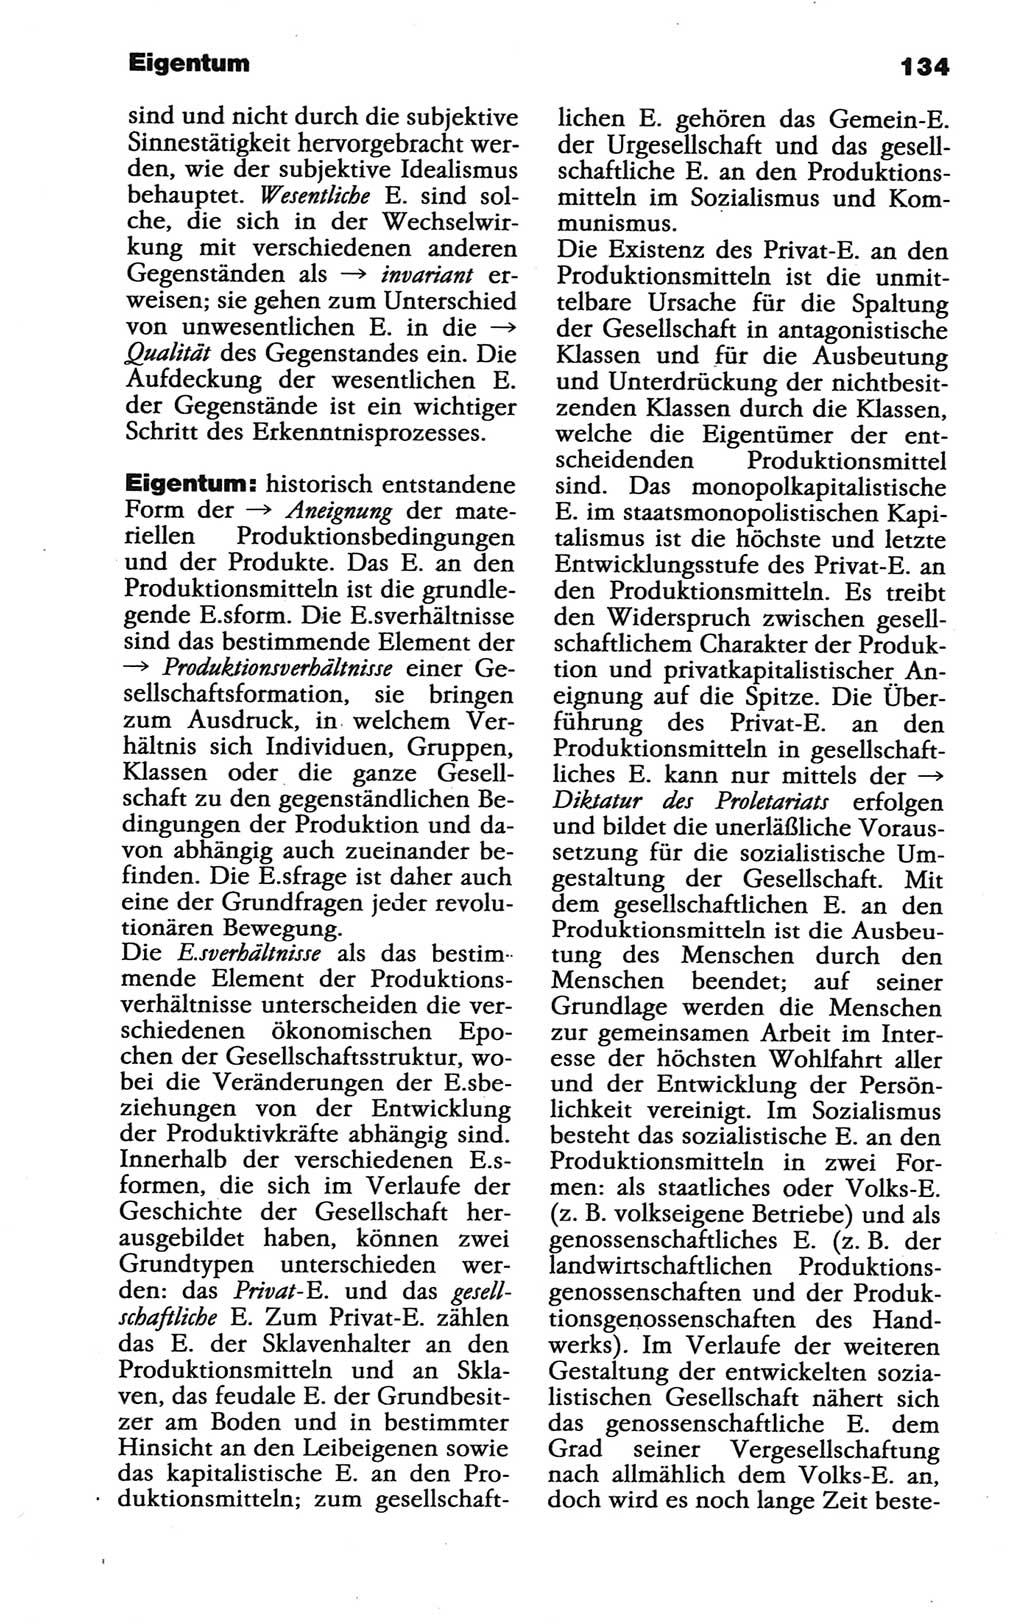 Wörterbuch der marxistisch-leninistischen Philosophie [Deutsche Demokratische Republik (DDR)] 1986, Seite 134 (Wb. ML Phil. DDR 1986, S. 134)